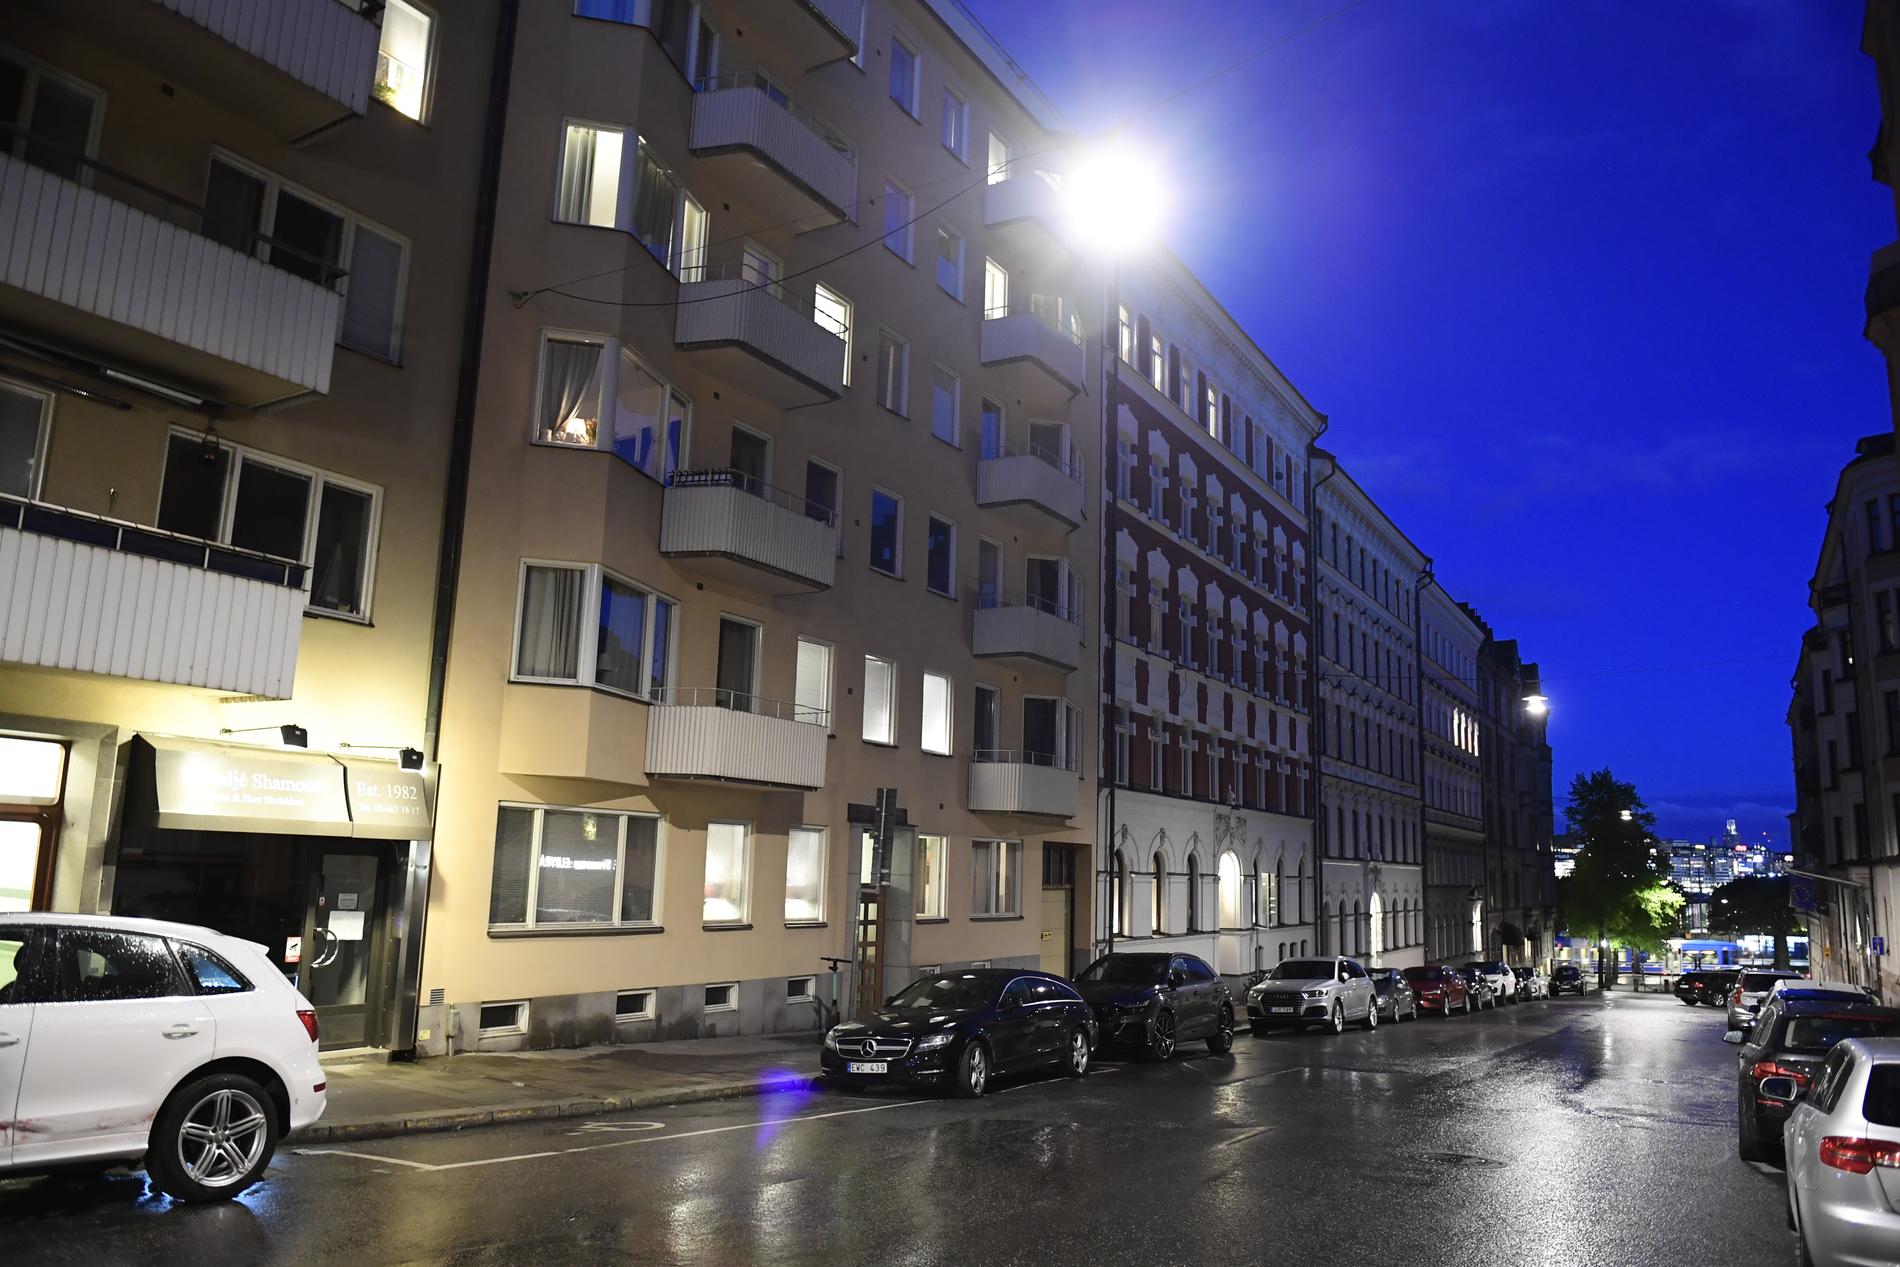 Adressen där Paolo Roberto greps misstänkt för sexköp hyrs i stora delar ut som lägenhetshotell. 